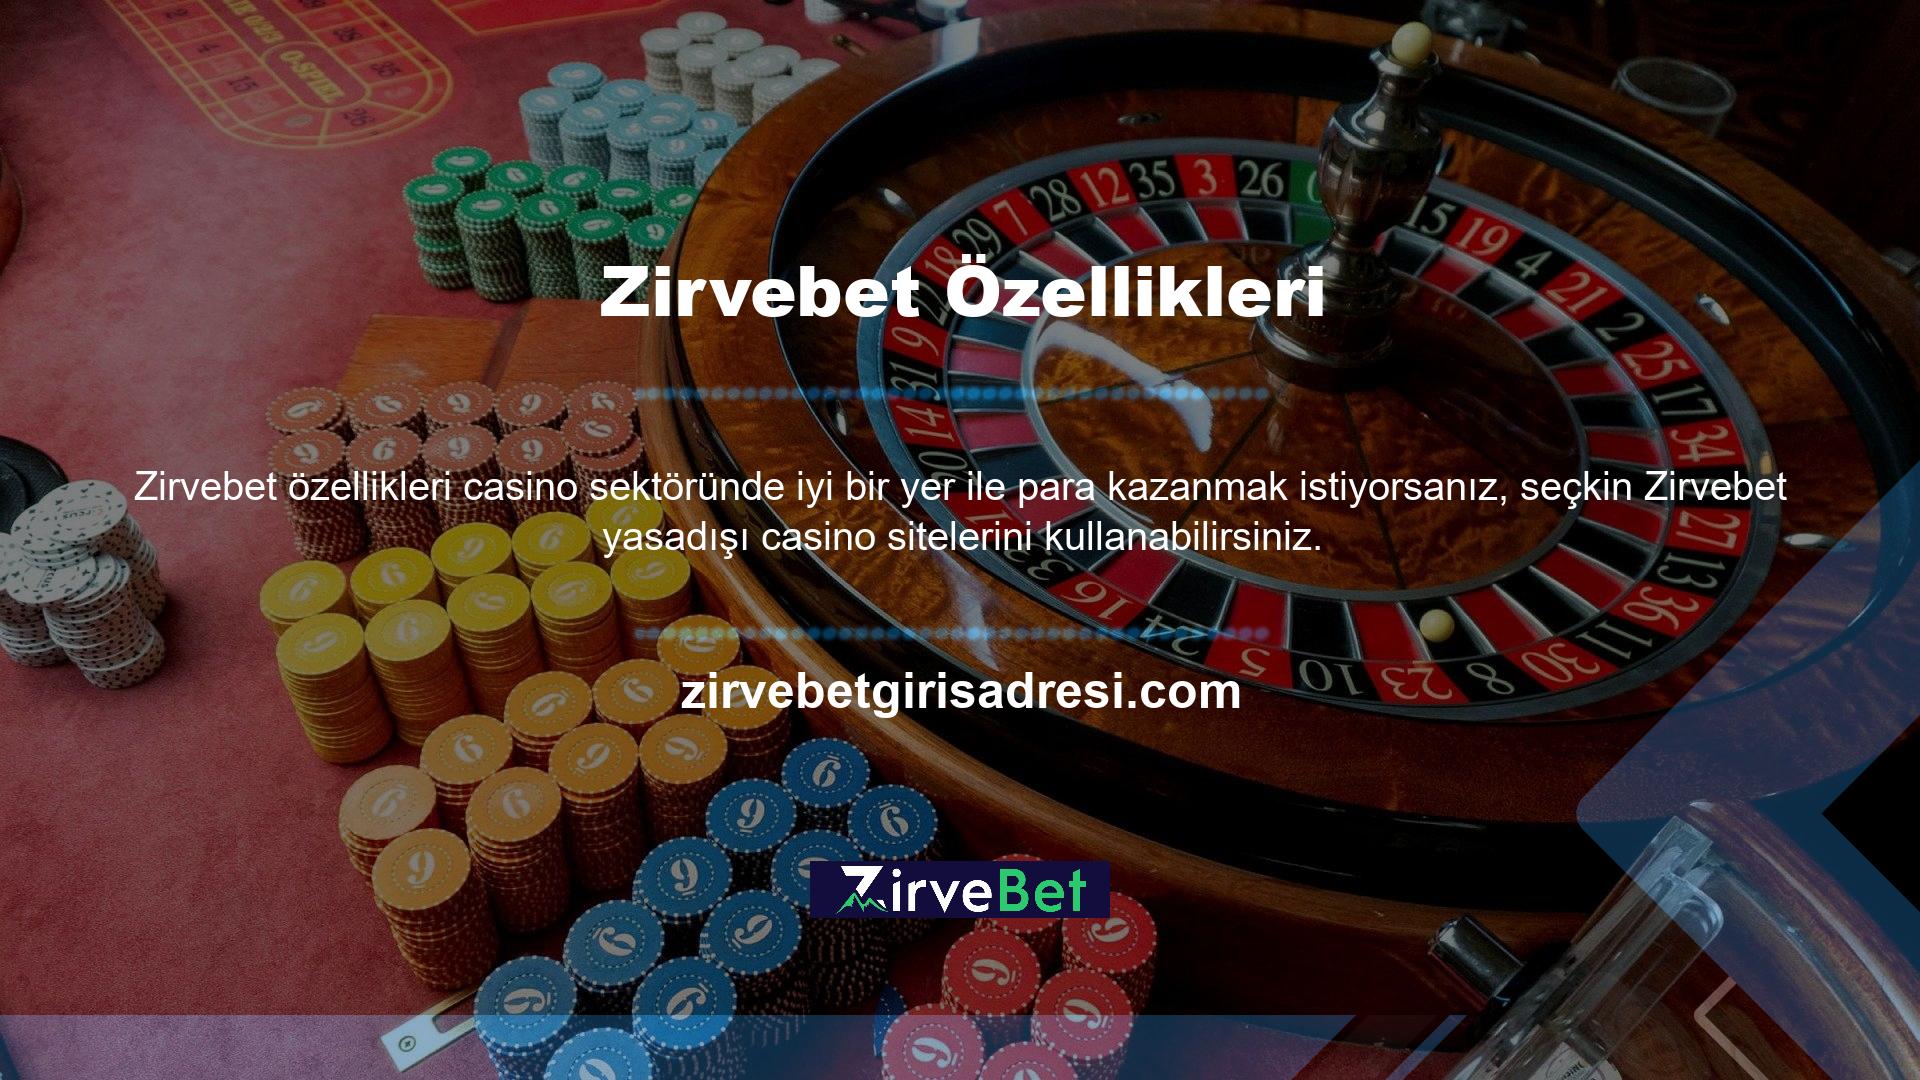 Zirvebet bahis sitesi ayrıca oyuncuların slot ve blackjack gibi oyunların tadını çıkarabilecekleri çok çeşitli casino oyunları sunmaktadır